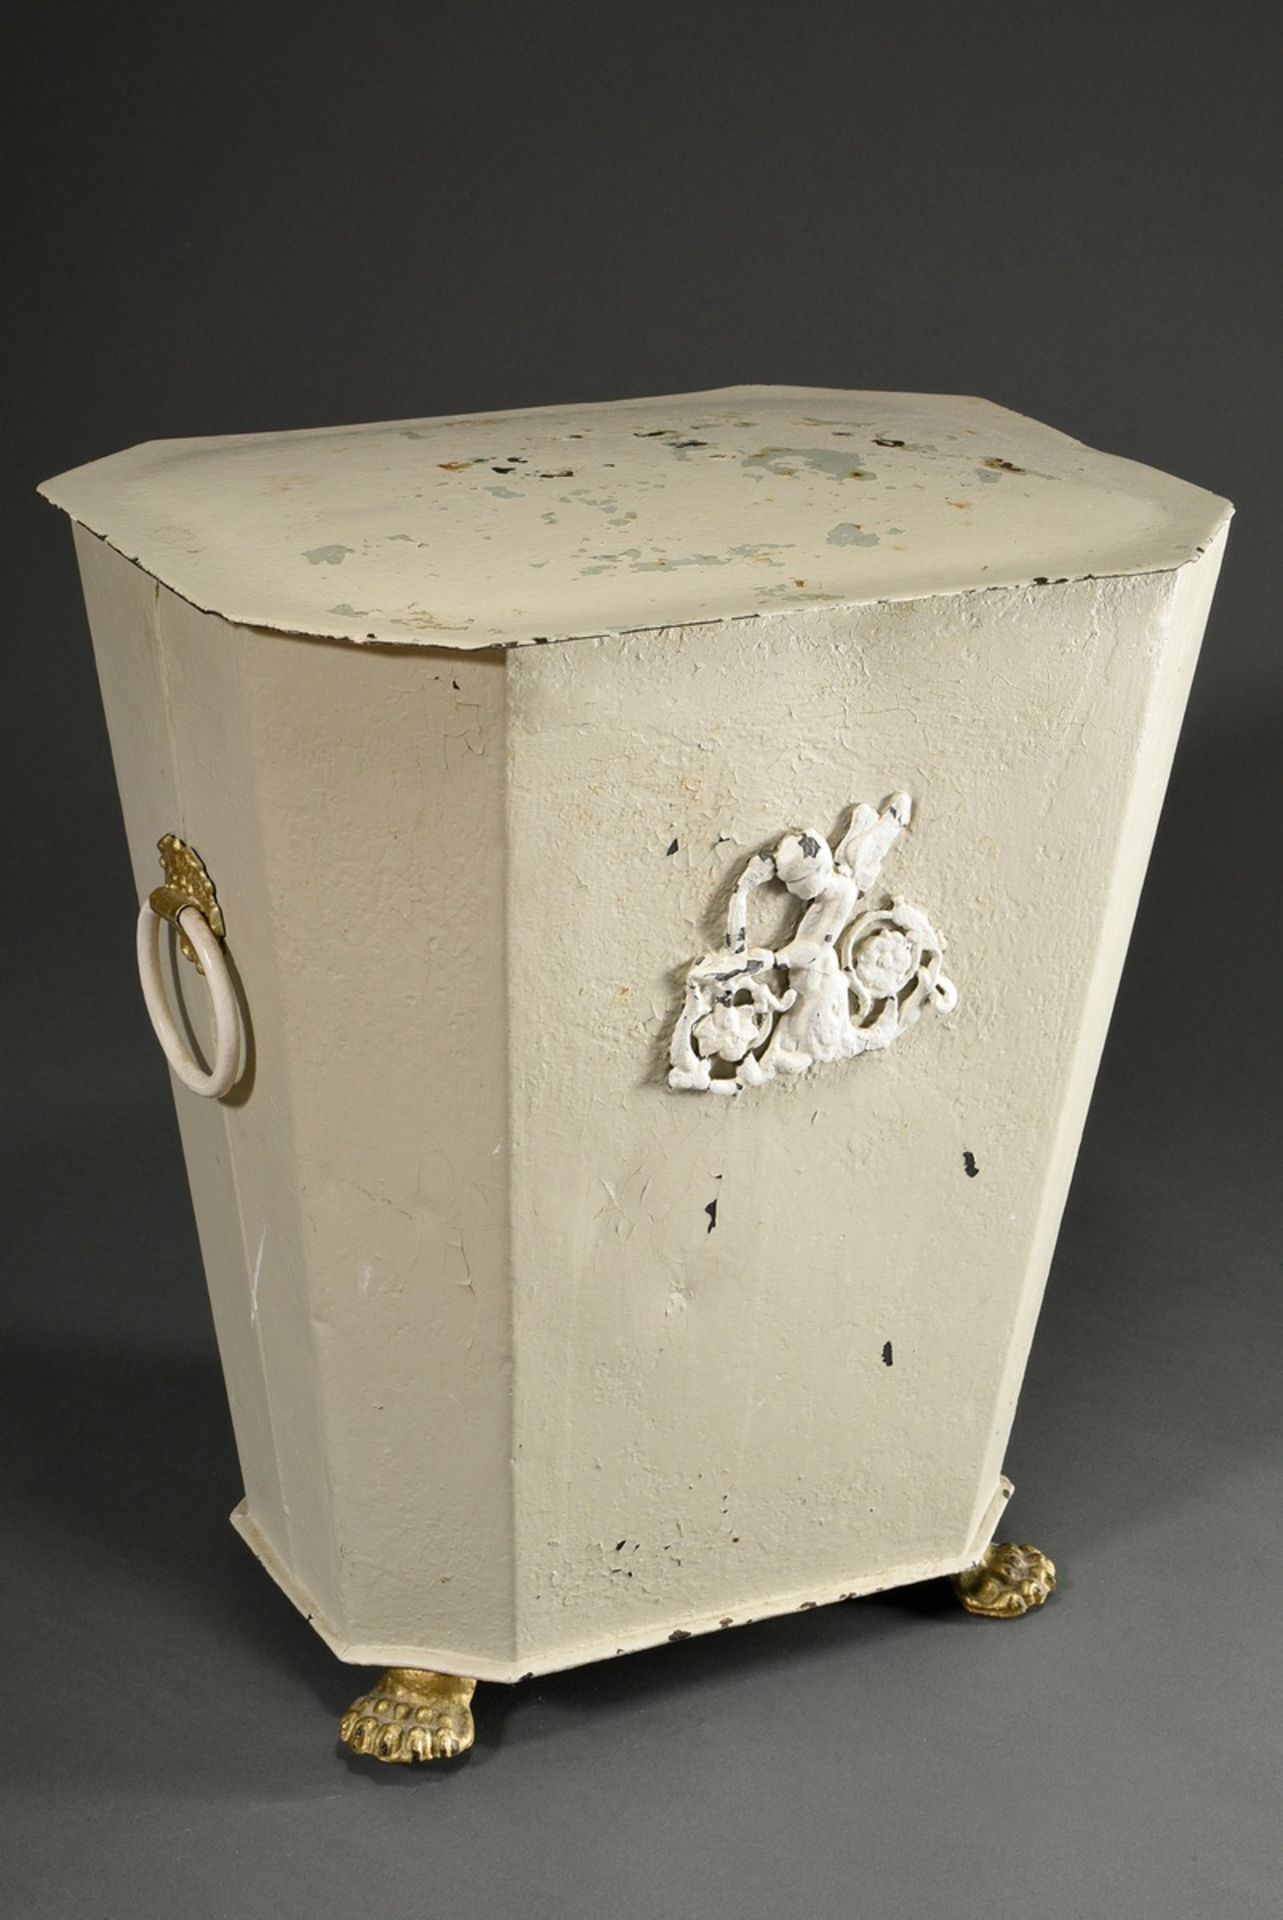 Biedermeier Torfkiste auf Tatzenfüßen mit Reliefdekorationen, Metall weiß-gold gefasst, um 1850, 47